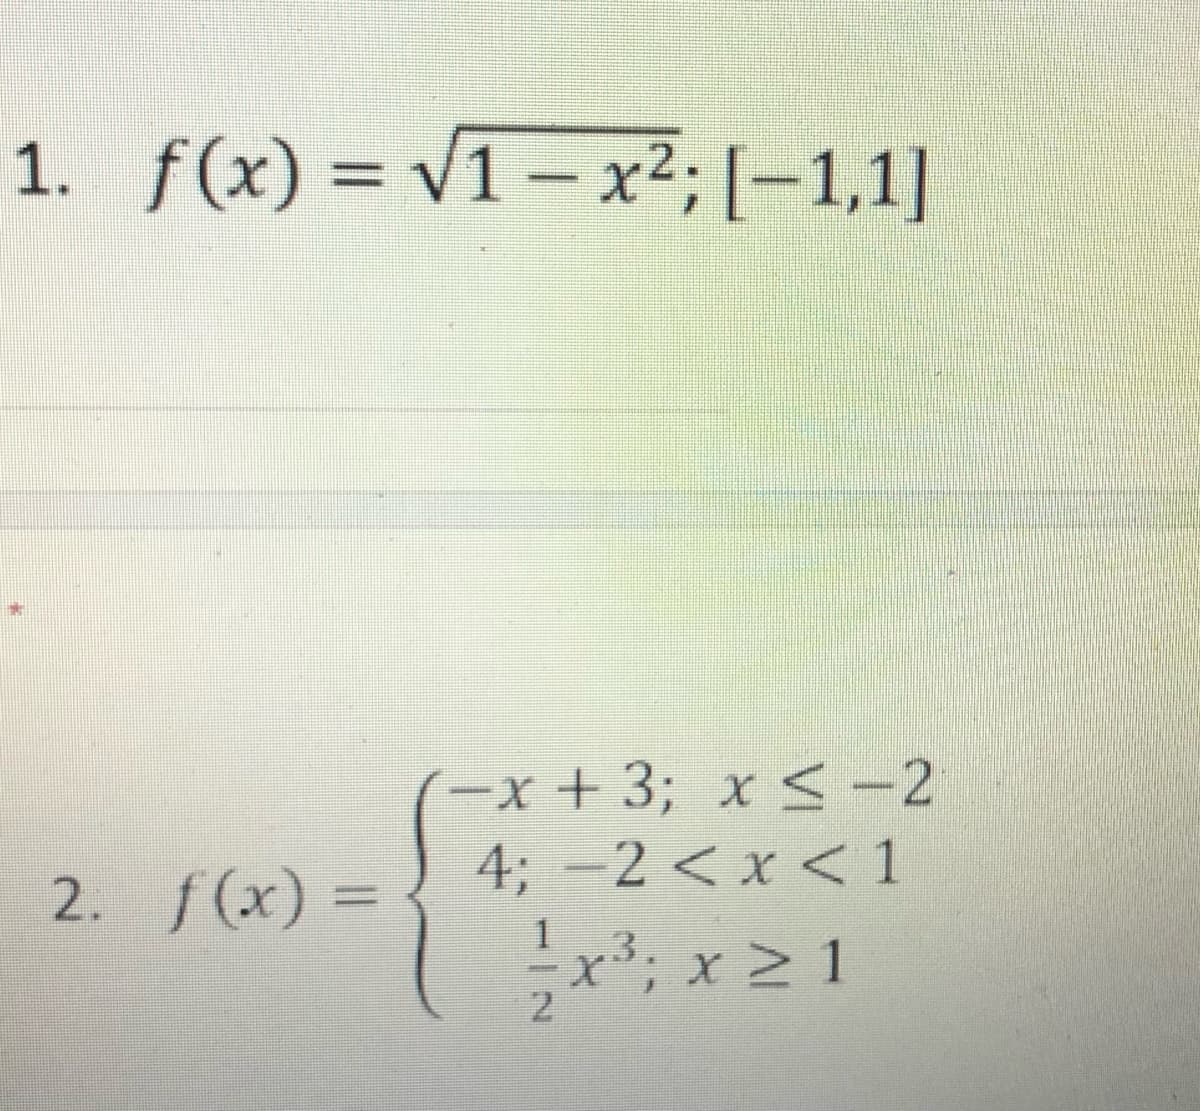 1. f(x) = v1 - x²; [-1,1]
(-x+ 3; x <-2
4; -2 < x < 1
2. f(x) =
%3D
x; x 2 1
2.
